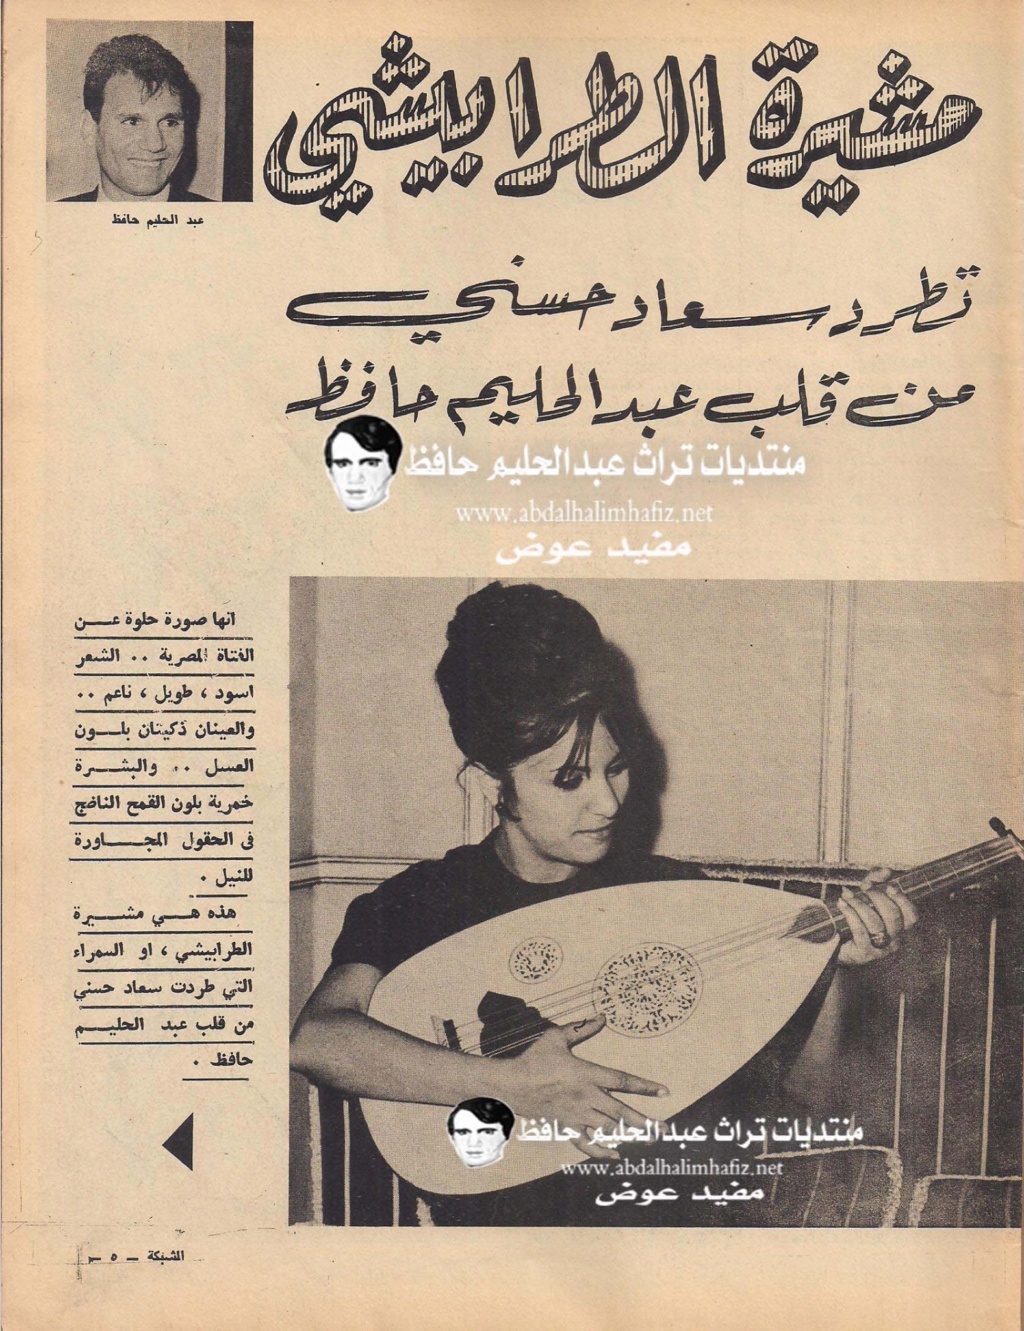 مقال صحفي : مشيرة الطرابيشي تطرد سعاد حسني من قلب عبدالحليم حافظ 1966 م 2171